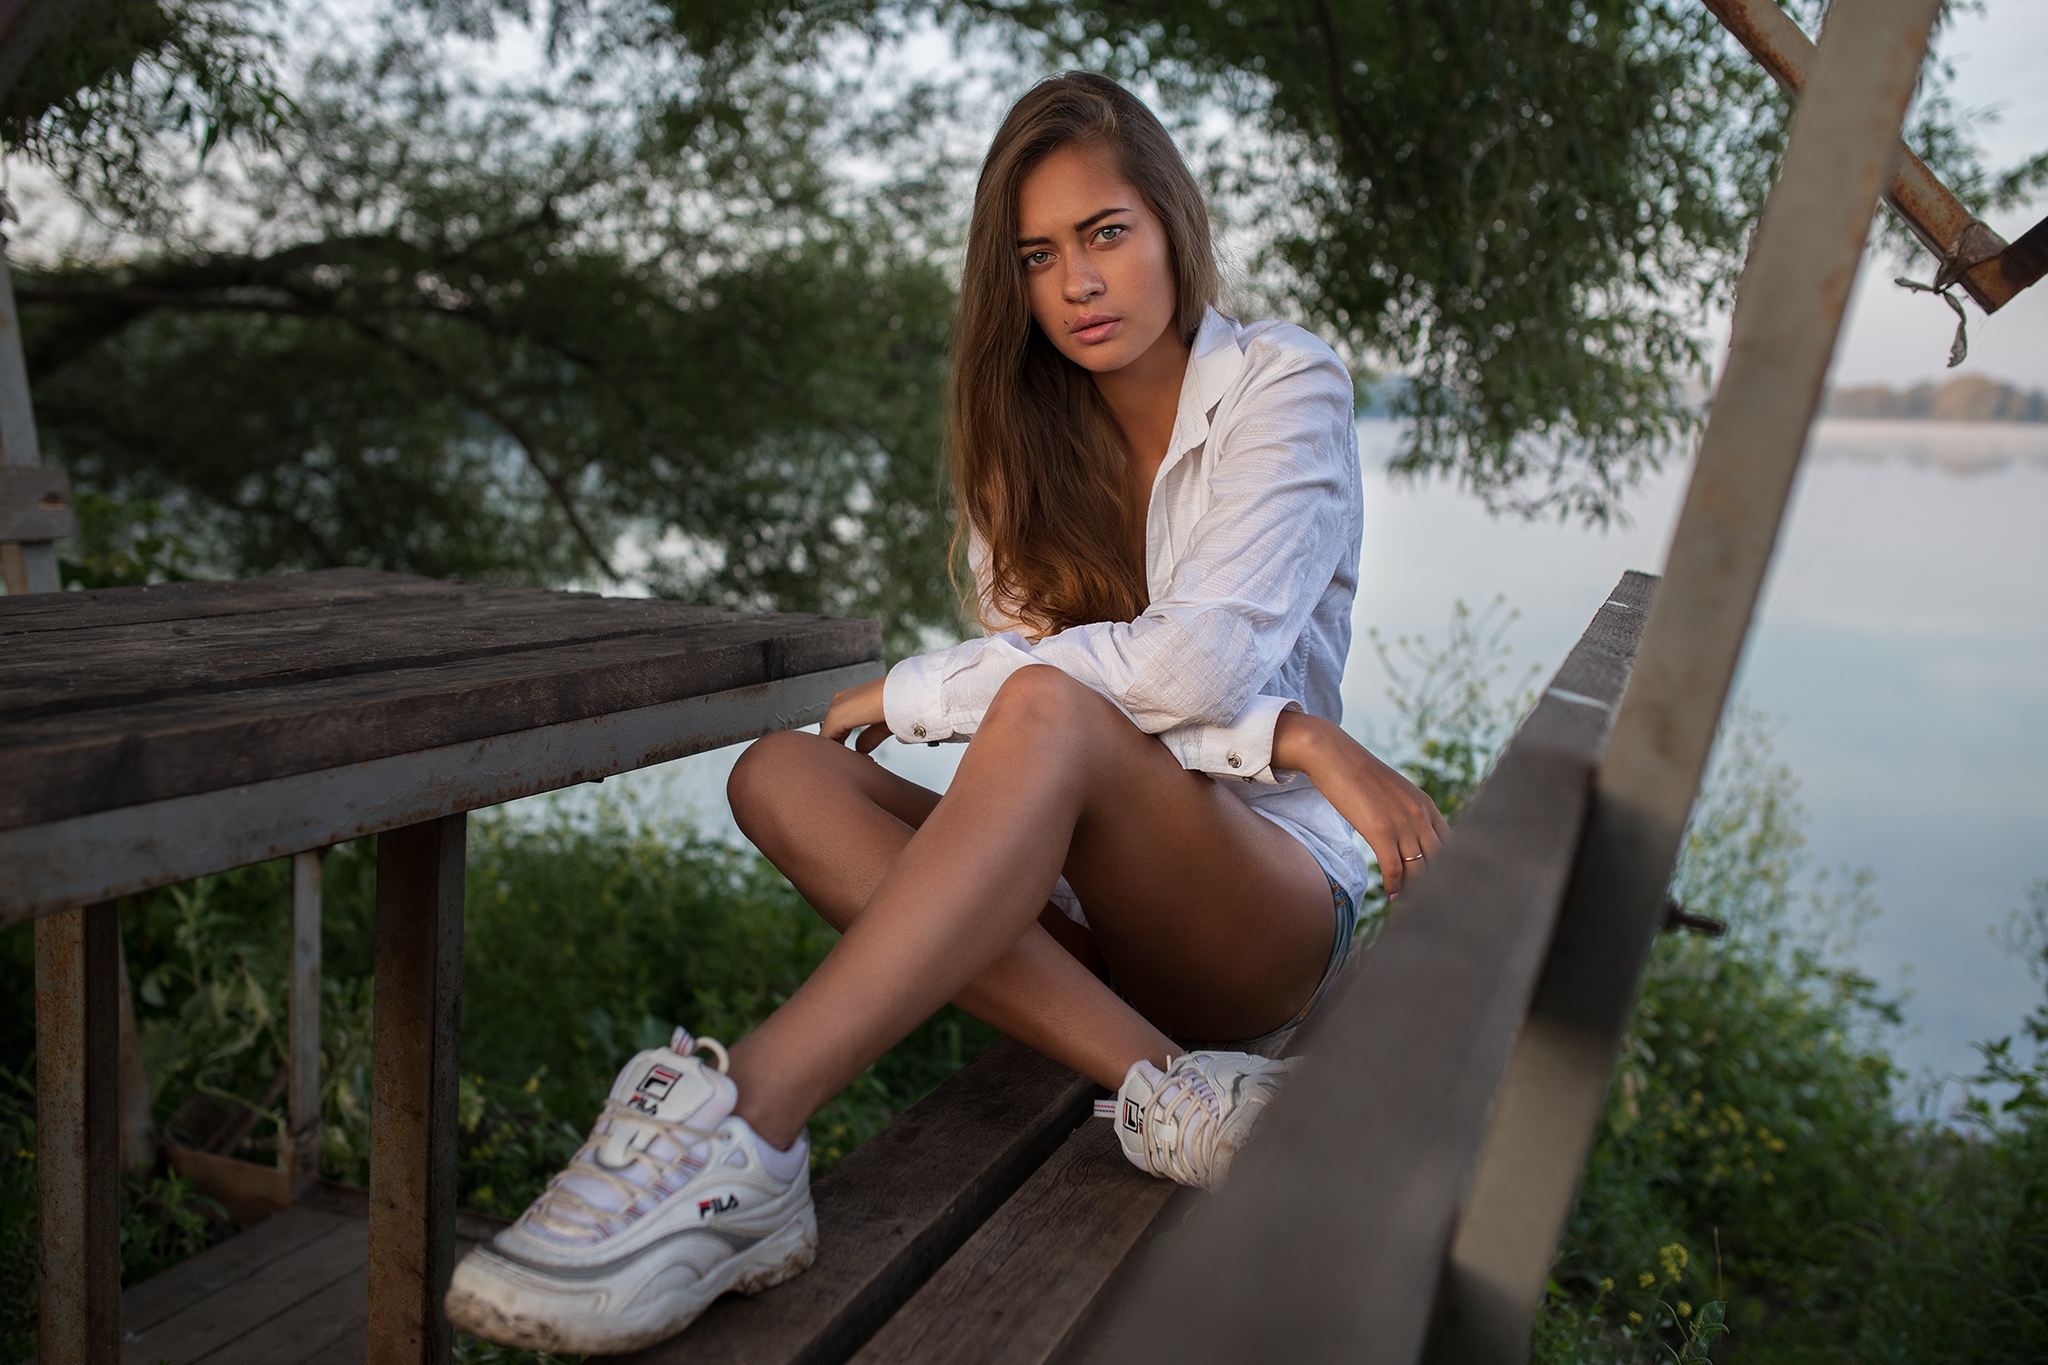 Dmitry Shulgin Sitting Legs Women Outdoors Women Model Olya Shorts White Shirt Brunette Long Hair Le 2048x1365